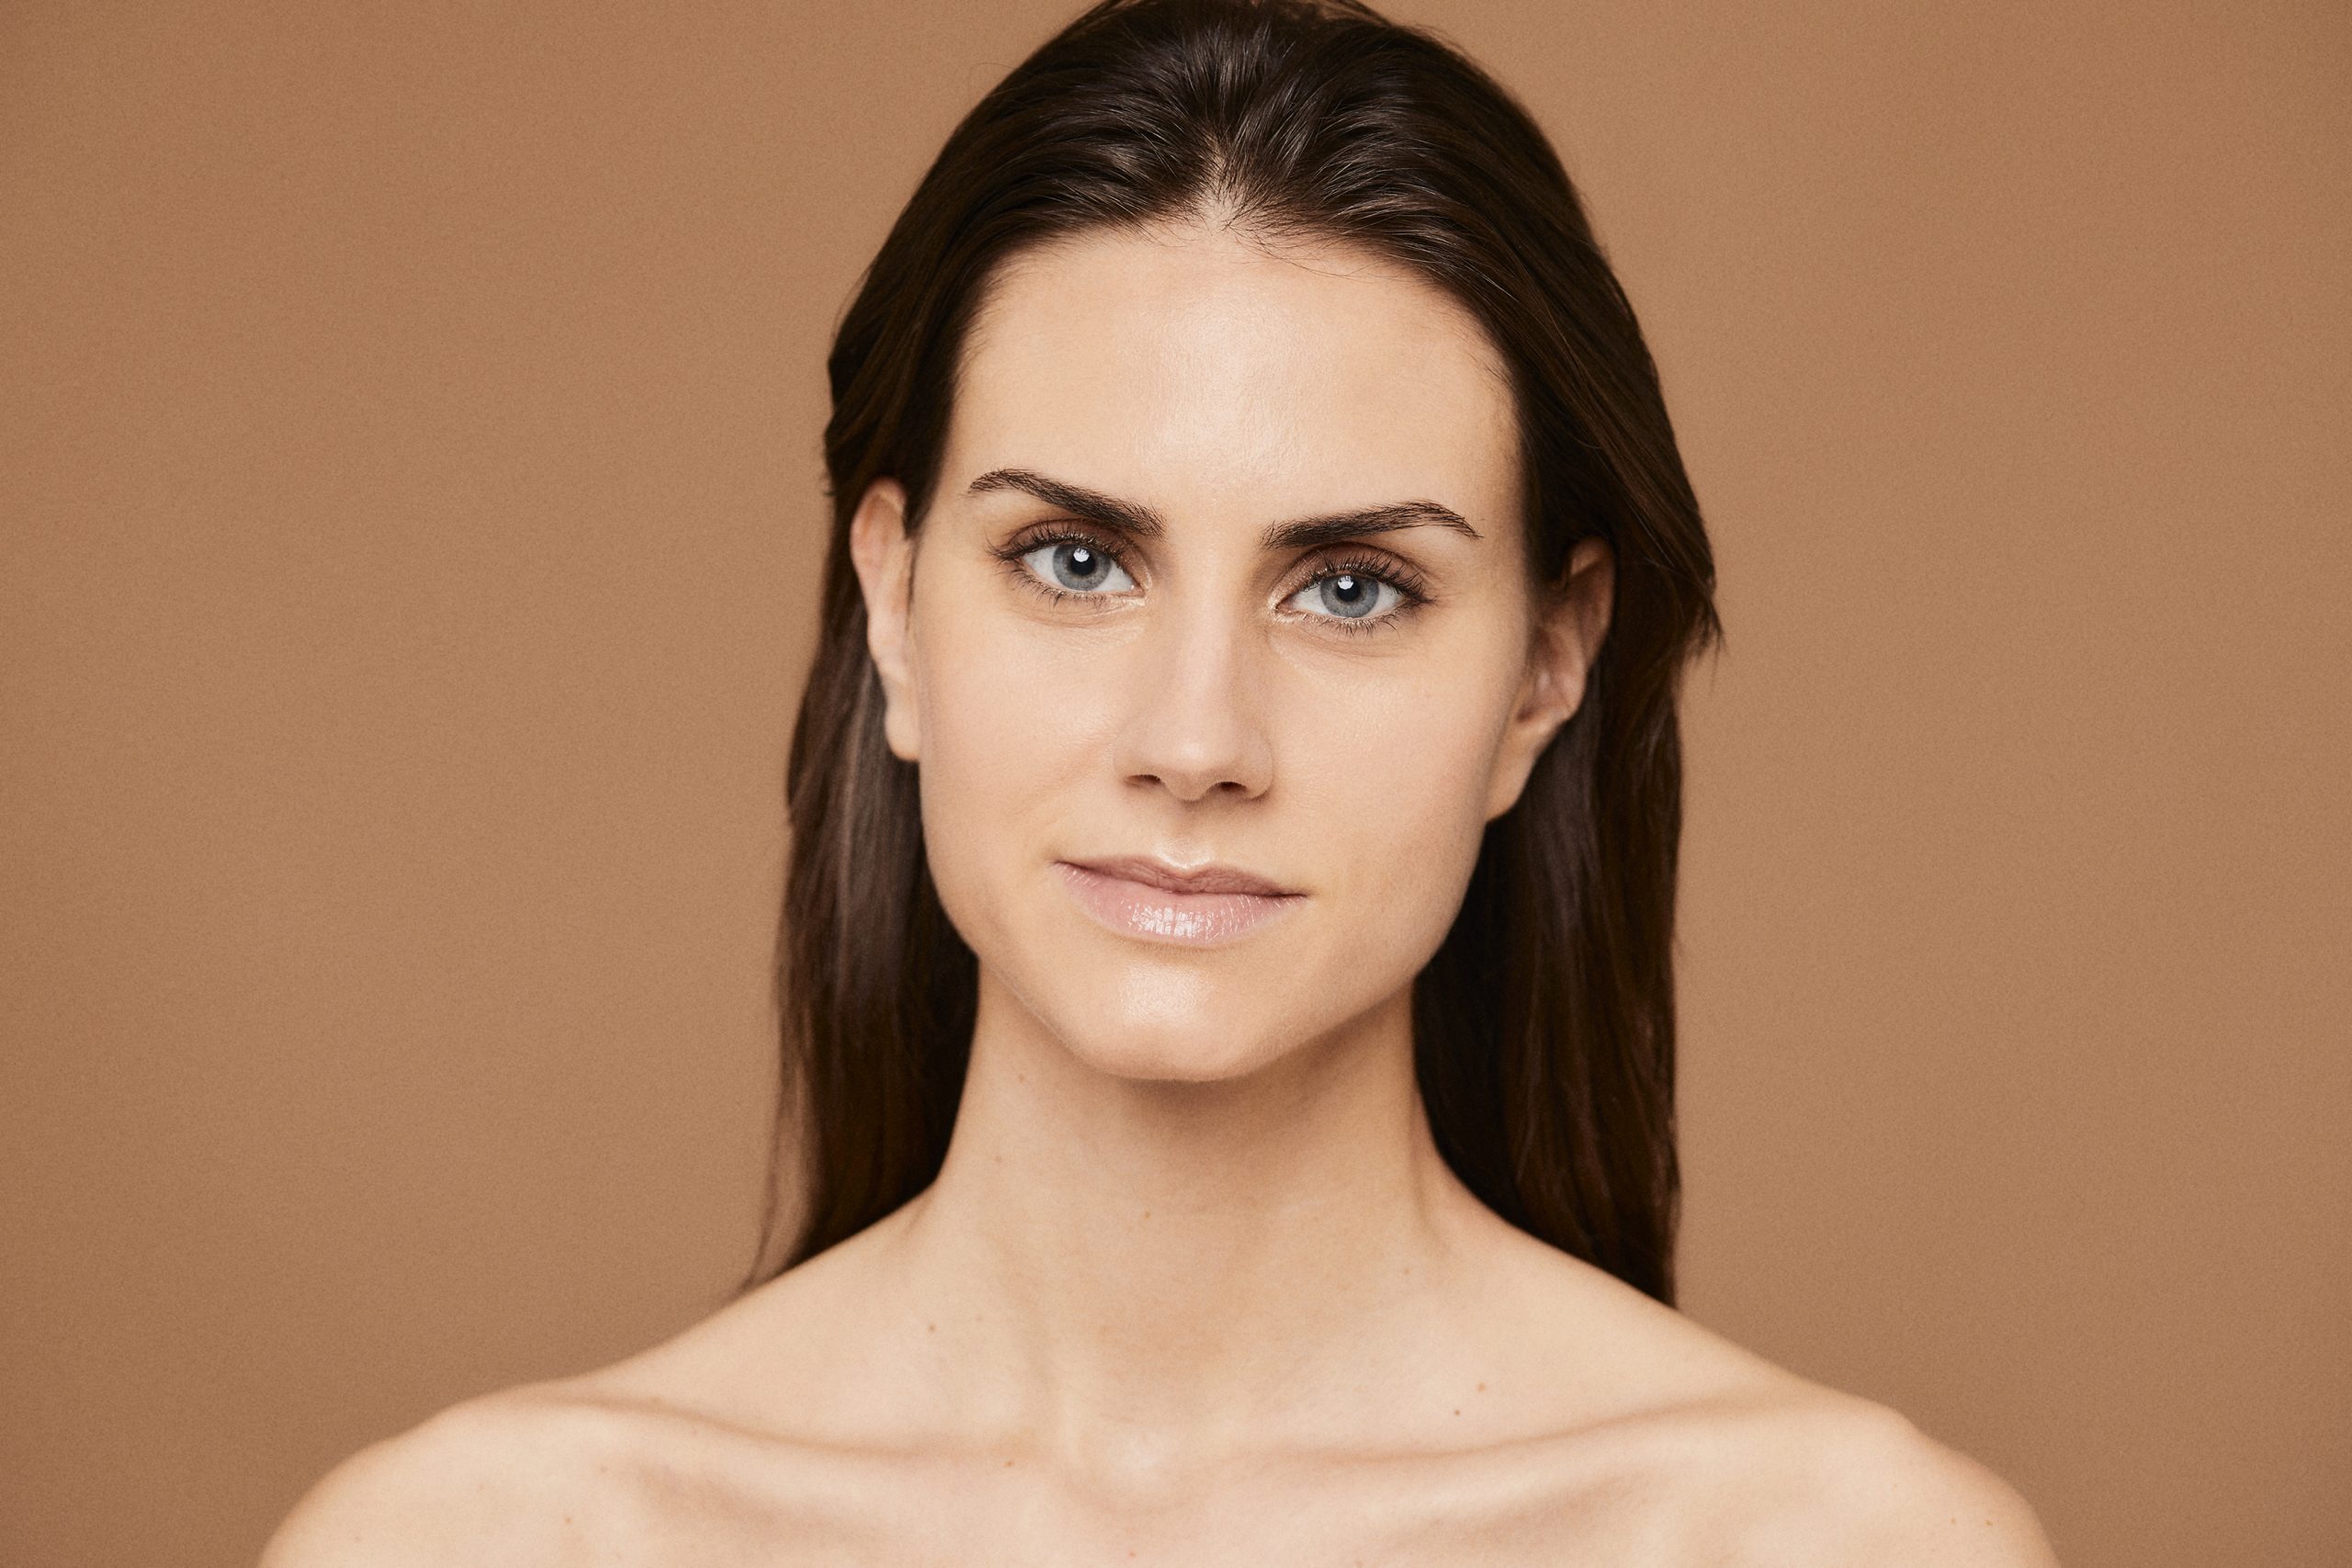 Descubre 9 mitos y verdades que (quizá) no sabías sobre el acné - Cristina Galmiche